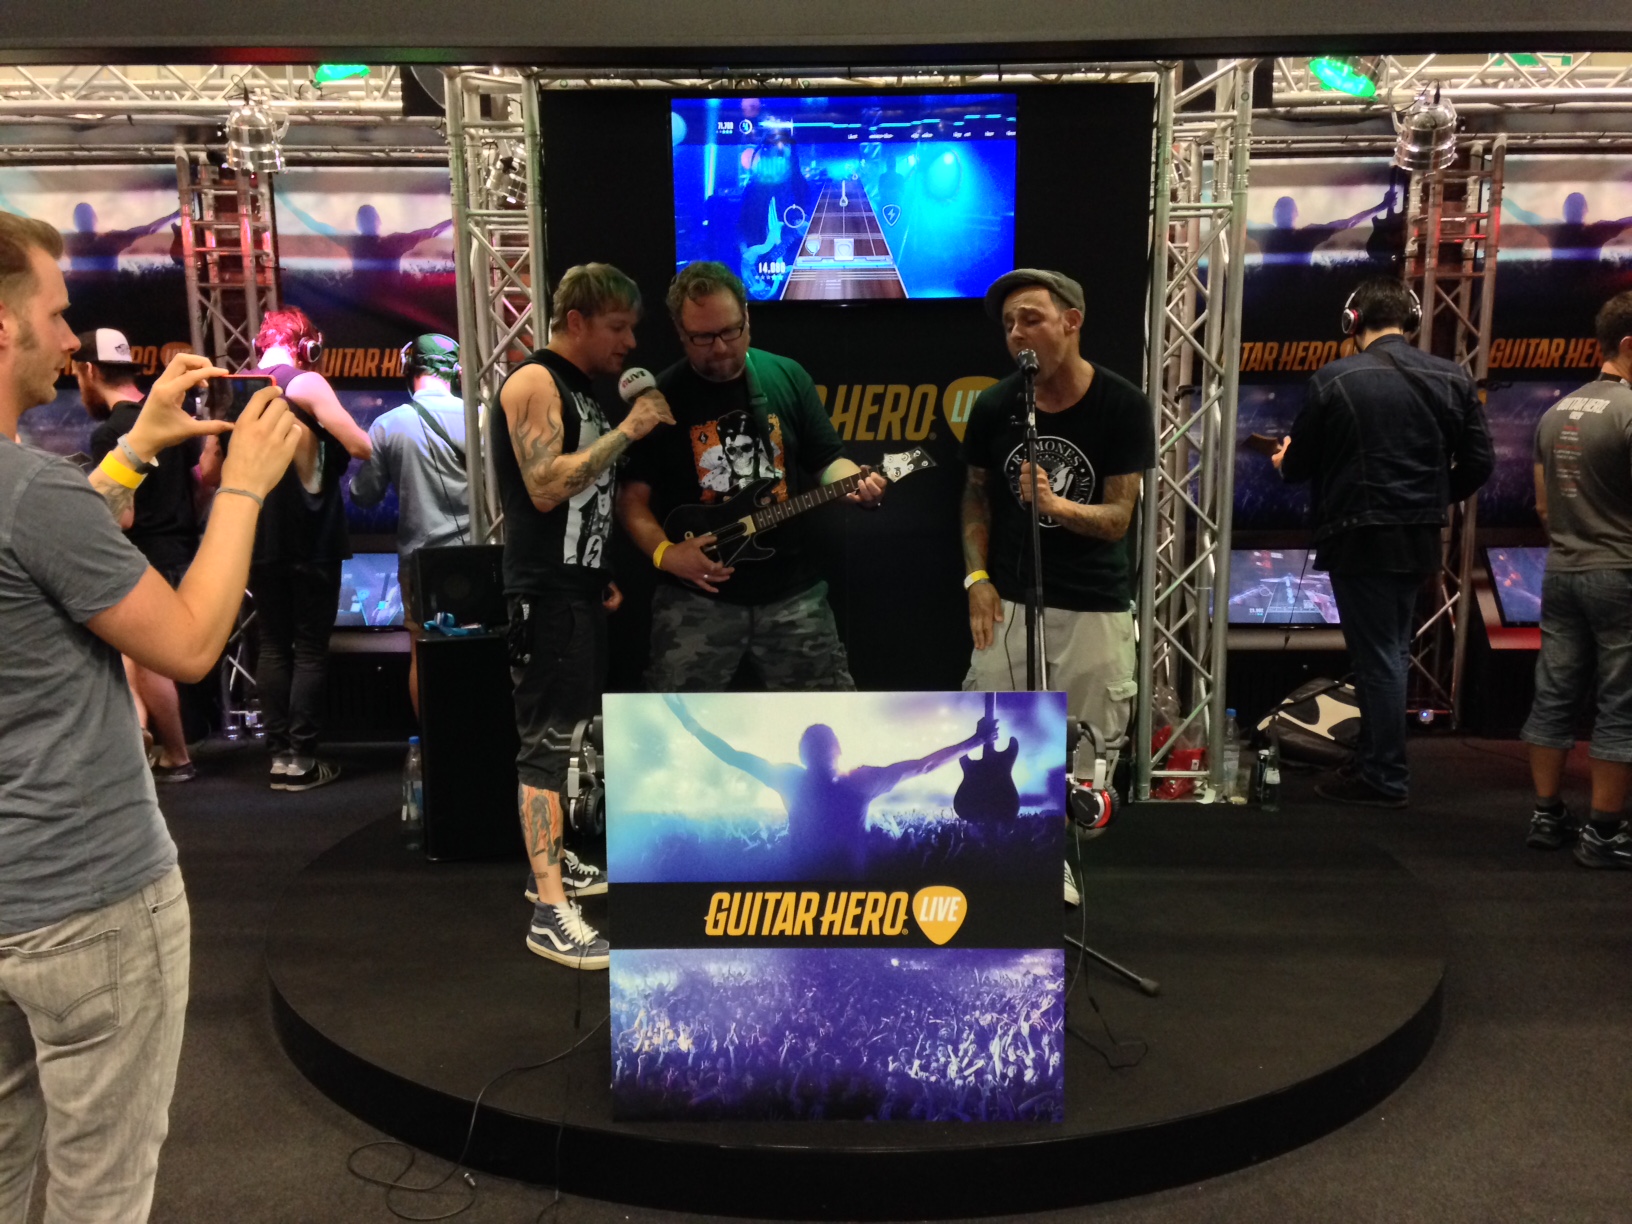 Η μπάντα που παίζει τα πάντα τζαμάρει με Guitar Hero Live! #gamescom2015